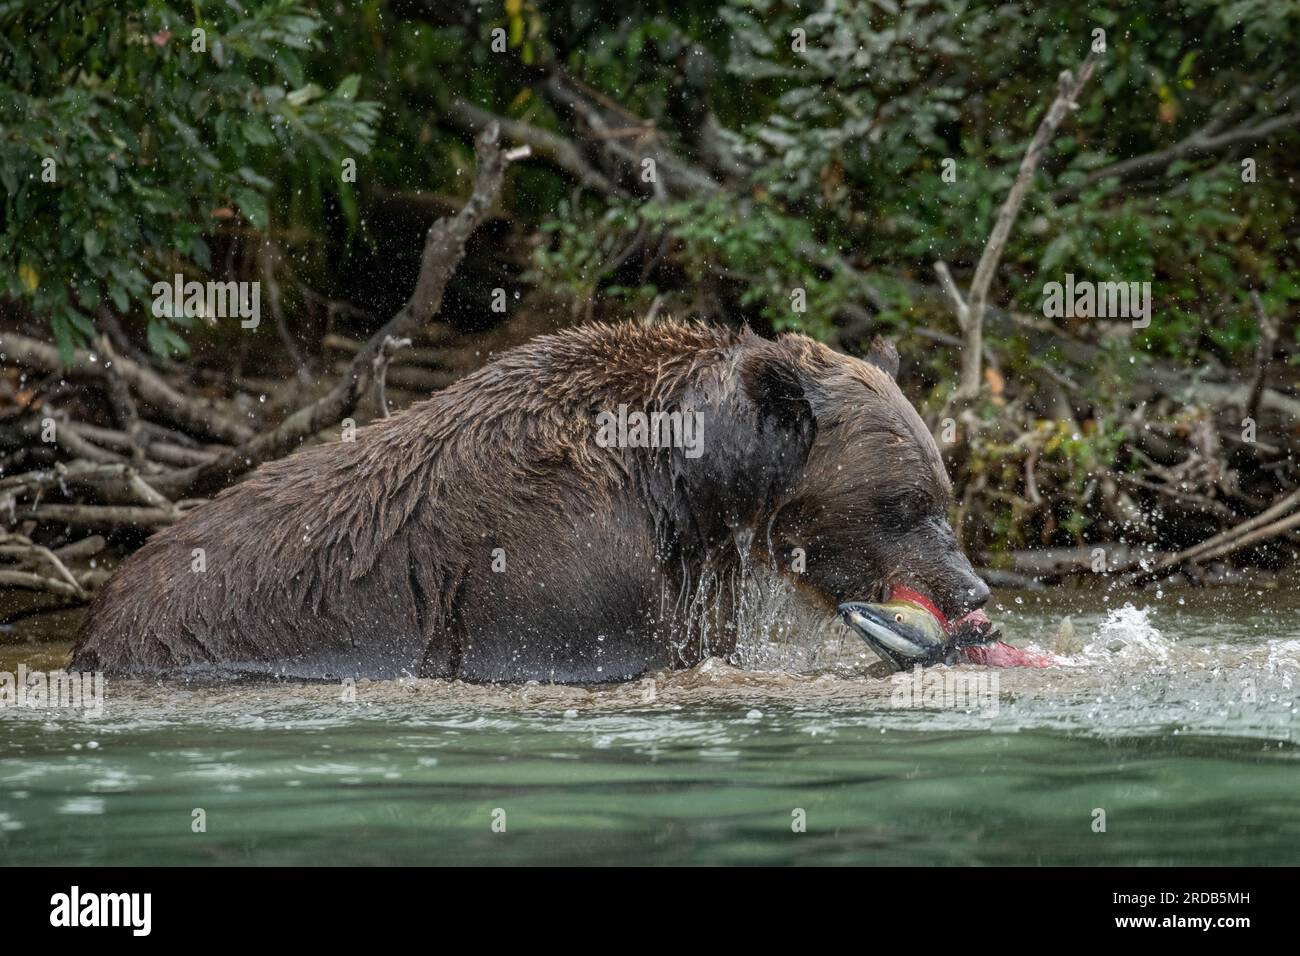 L'orso bruno ha catturato un pesce. ALASKA; USA: Le fotografie MAGICHE hanno mostrato un orso grizzly a grandezza naturale che spruzza in un fiume. Nell'immagine, i giganti Foto Stock